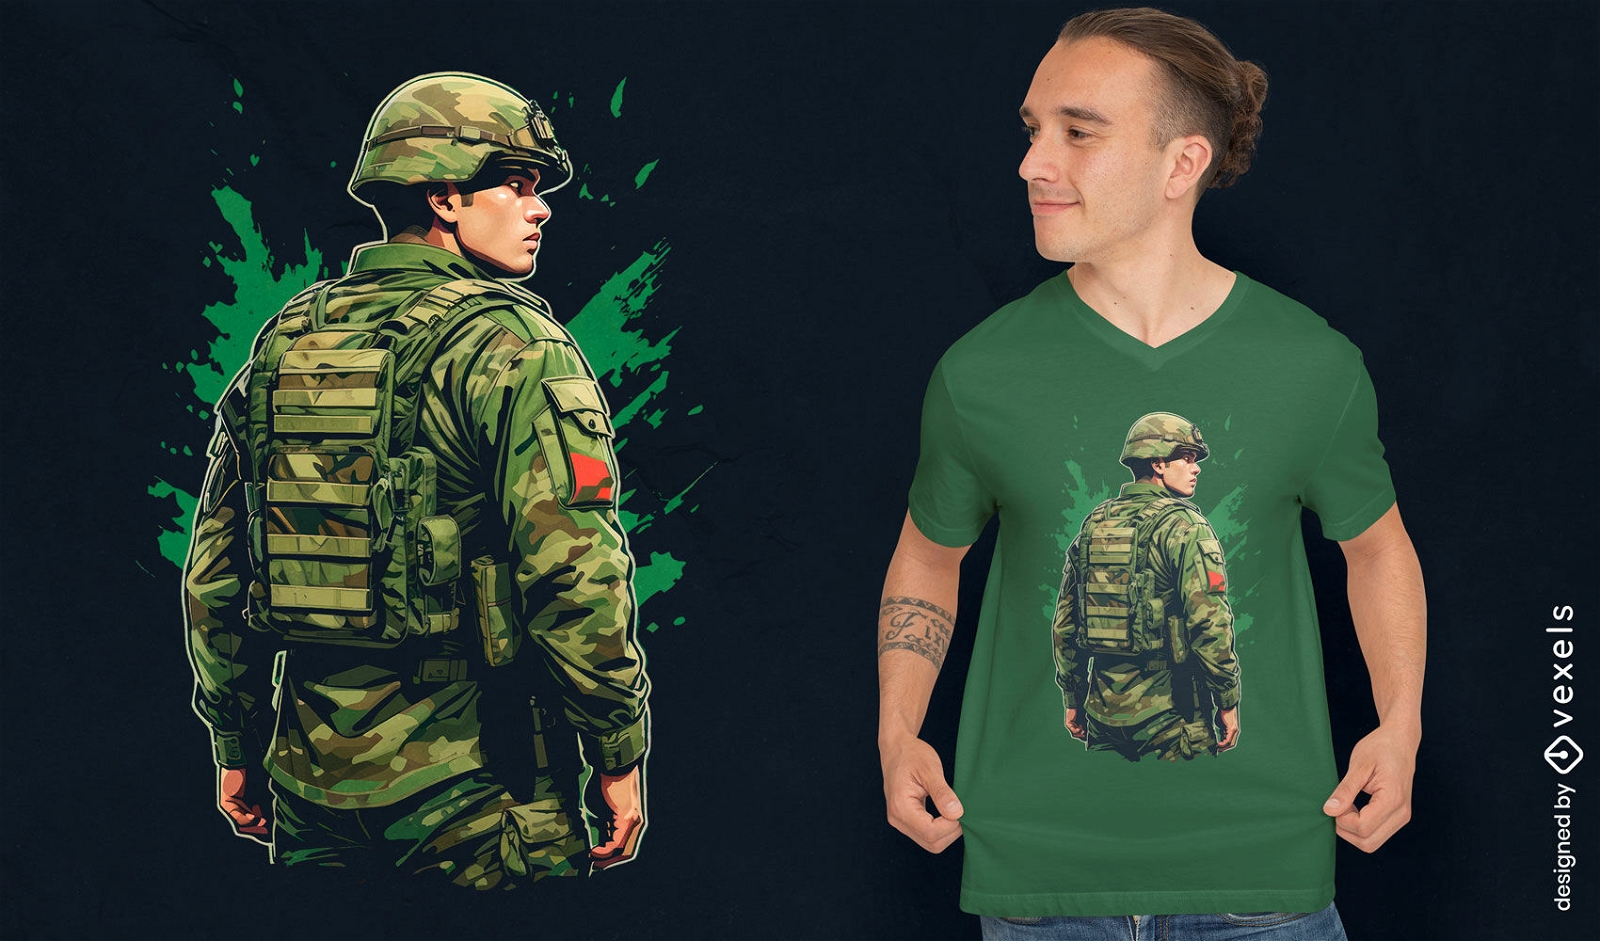 Dark soldier t-shirt design